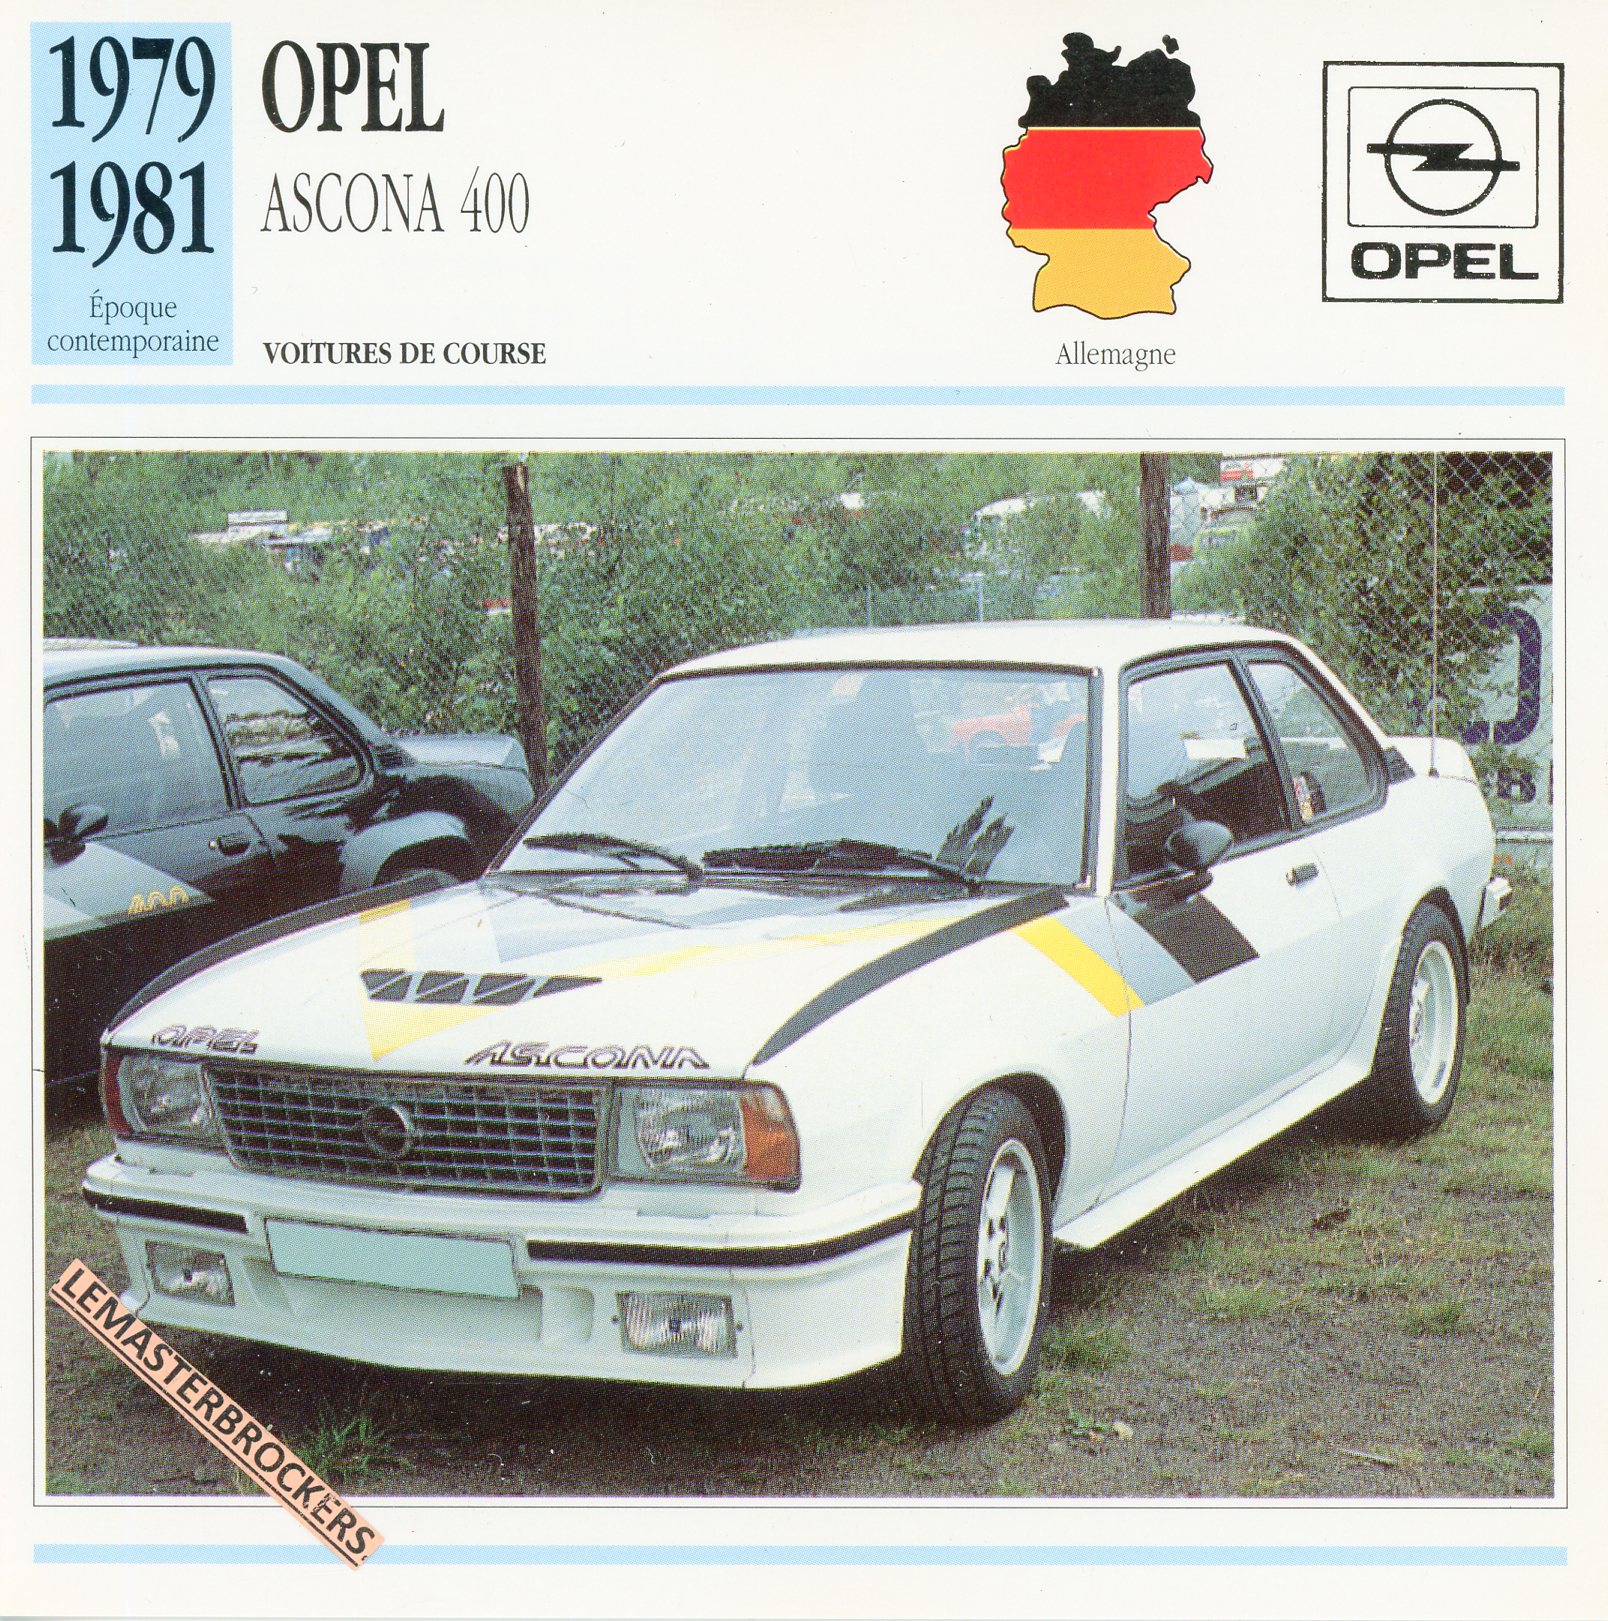 OPEL ASCONA 400 1979 1981 - FICHE AUTO OPEL